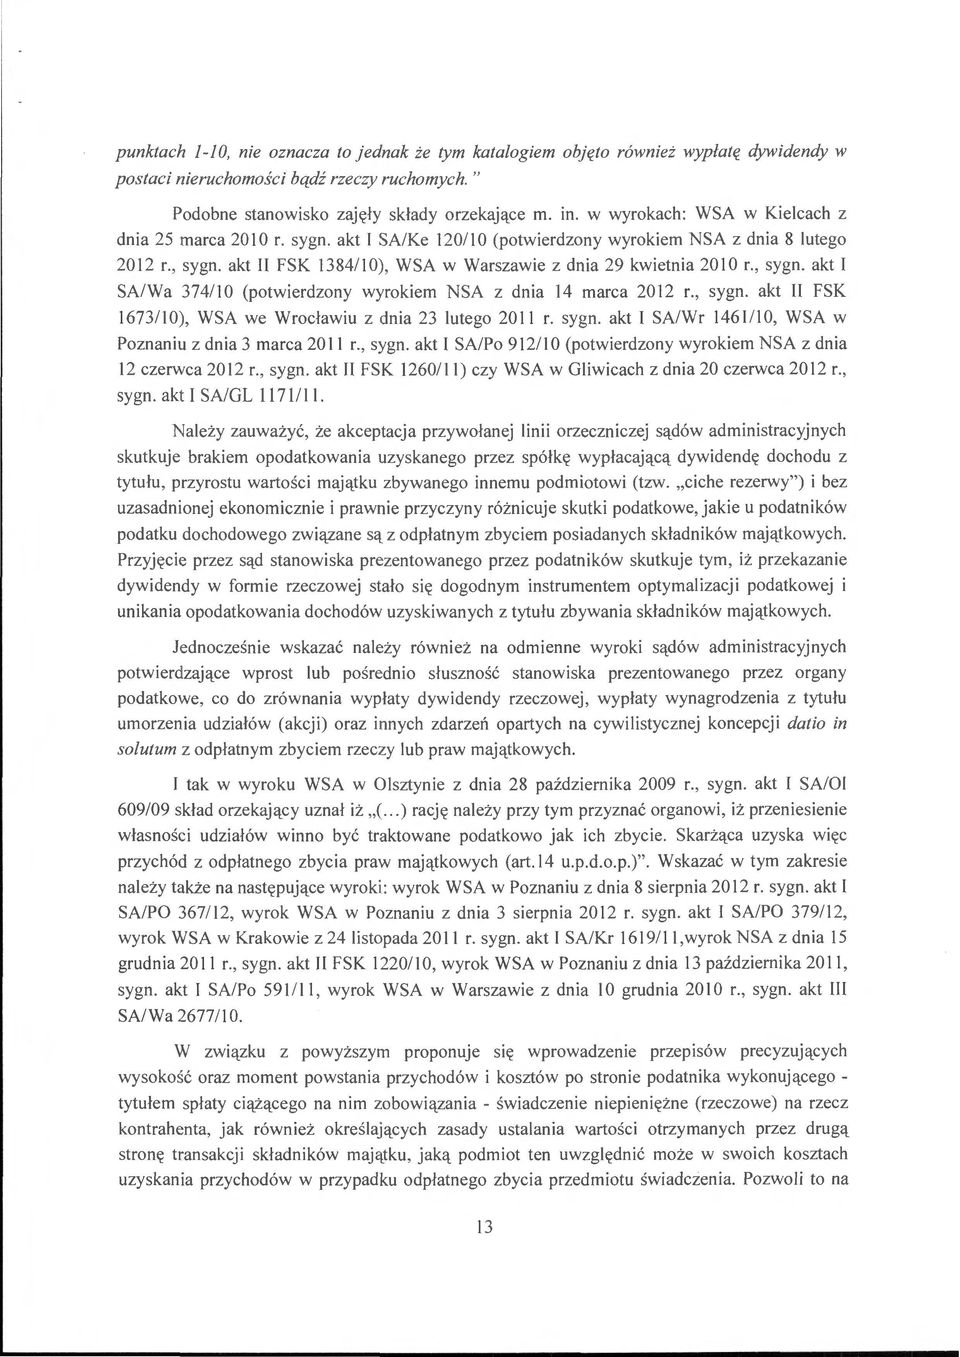 akt II FSK 13 8411 0), WSA w Warszawie z dnia 29 kwietnia 20 l O r., sygn. akt I SA/Wa 374110 (potwierdzony wyrokiem NSA z dnia 14 marca 2012 r., sygn. akt II FSK 1673/10), WSA we Wrocławiu z dnia 23 lutego 2011 r.